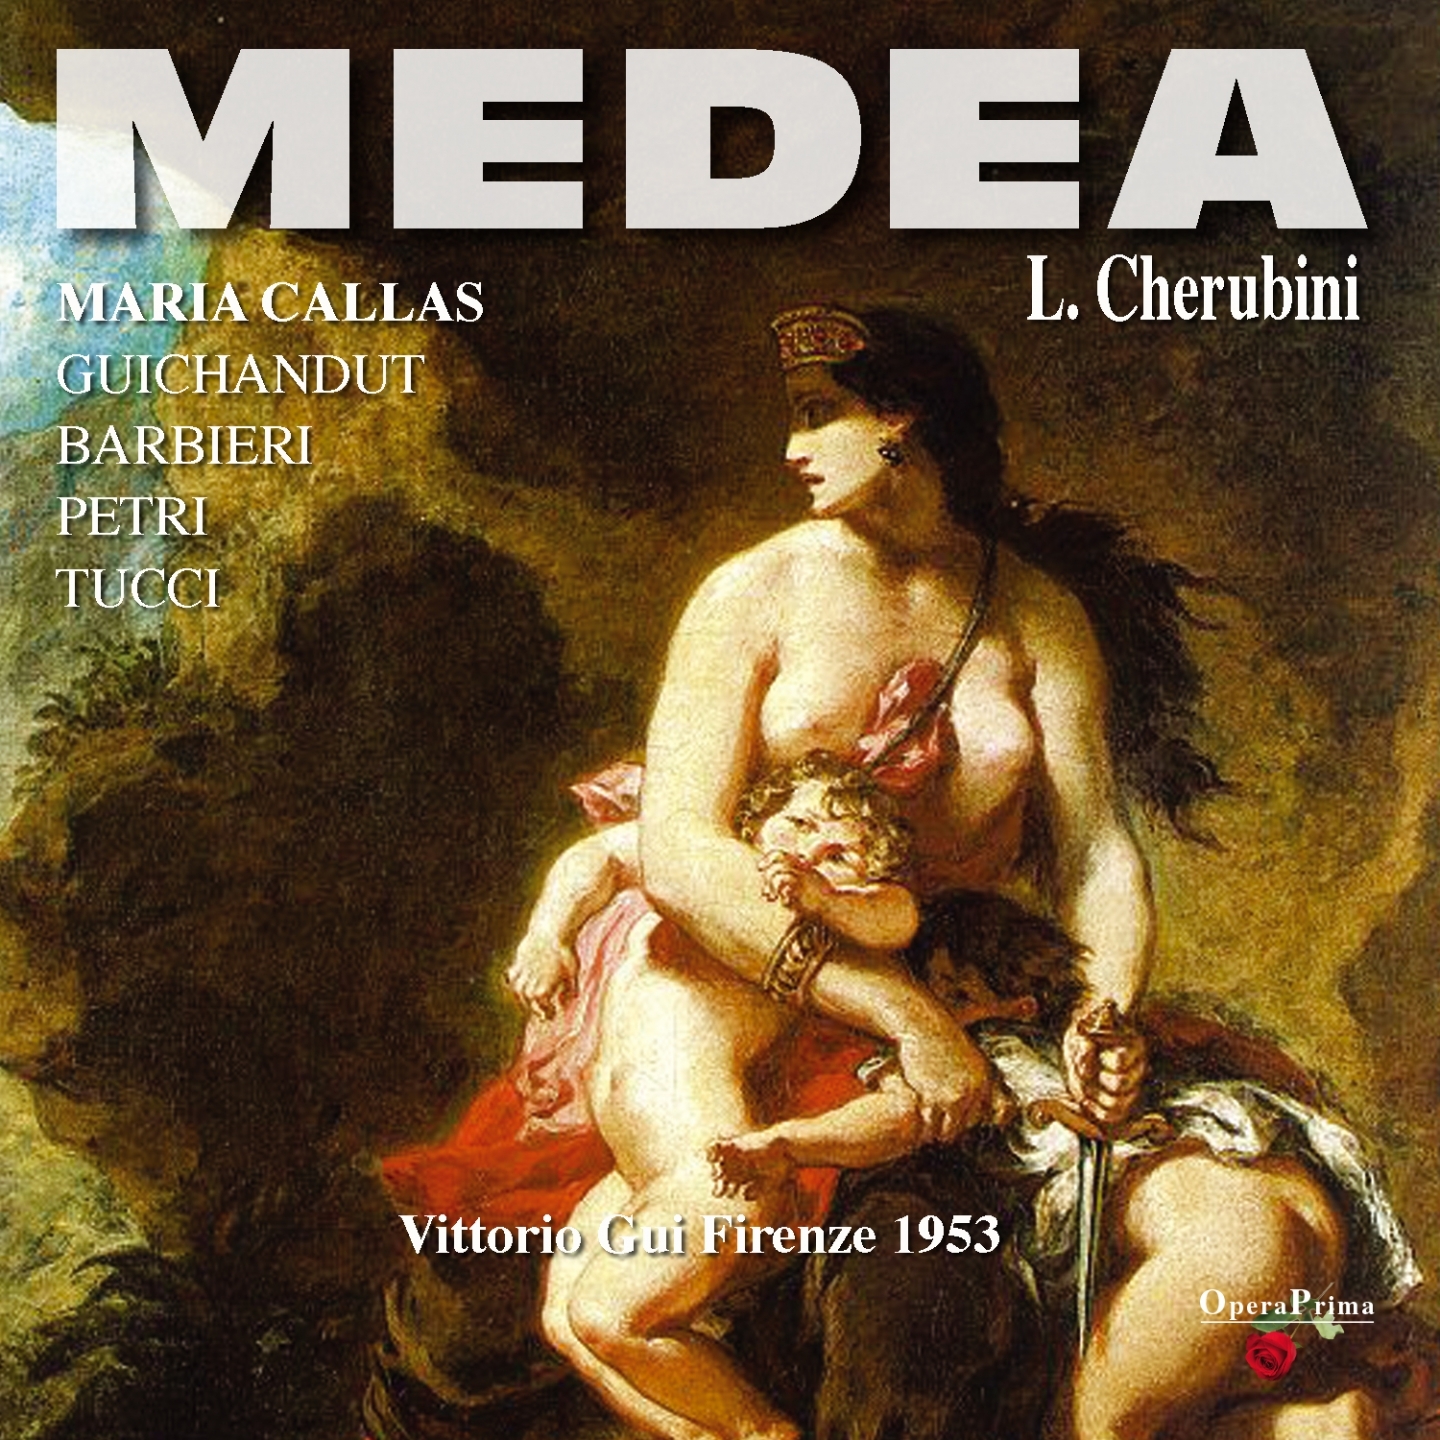 Medea : Act I - "Signor! Ferma una donna"